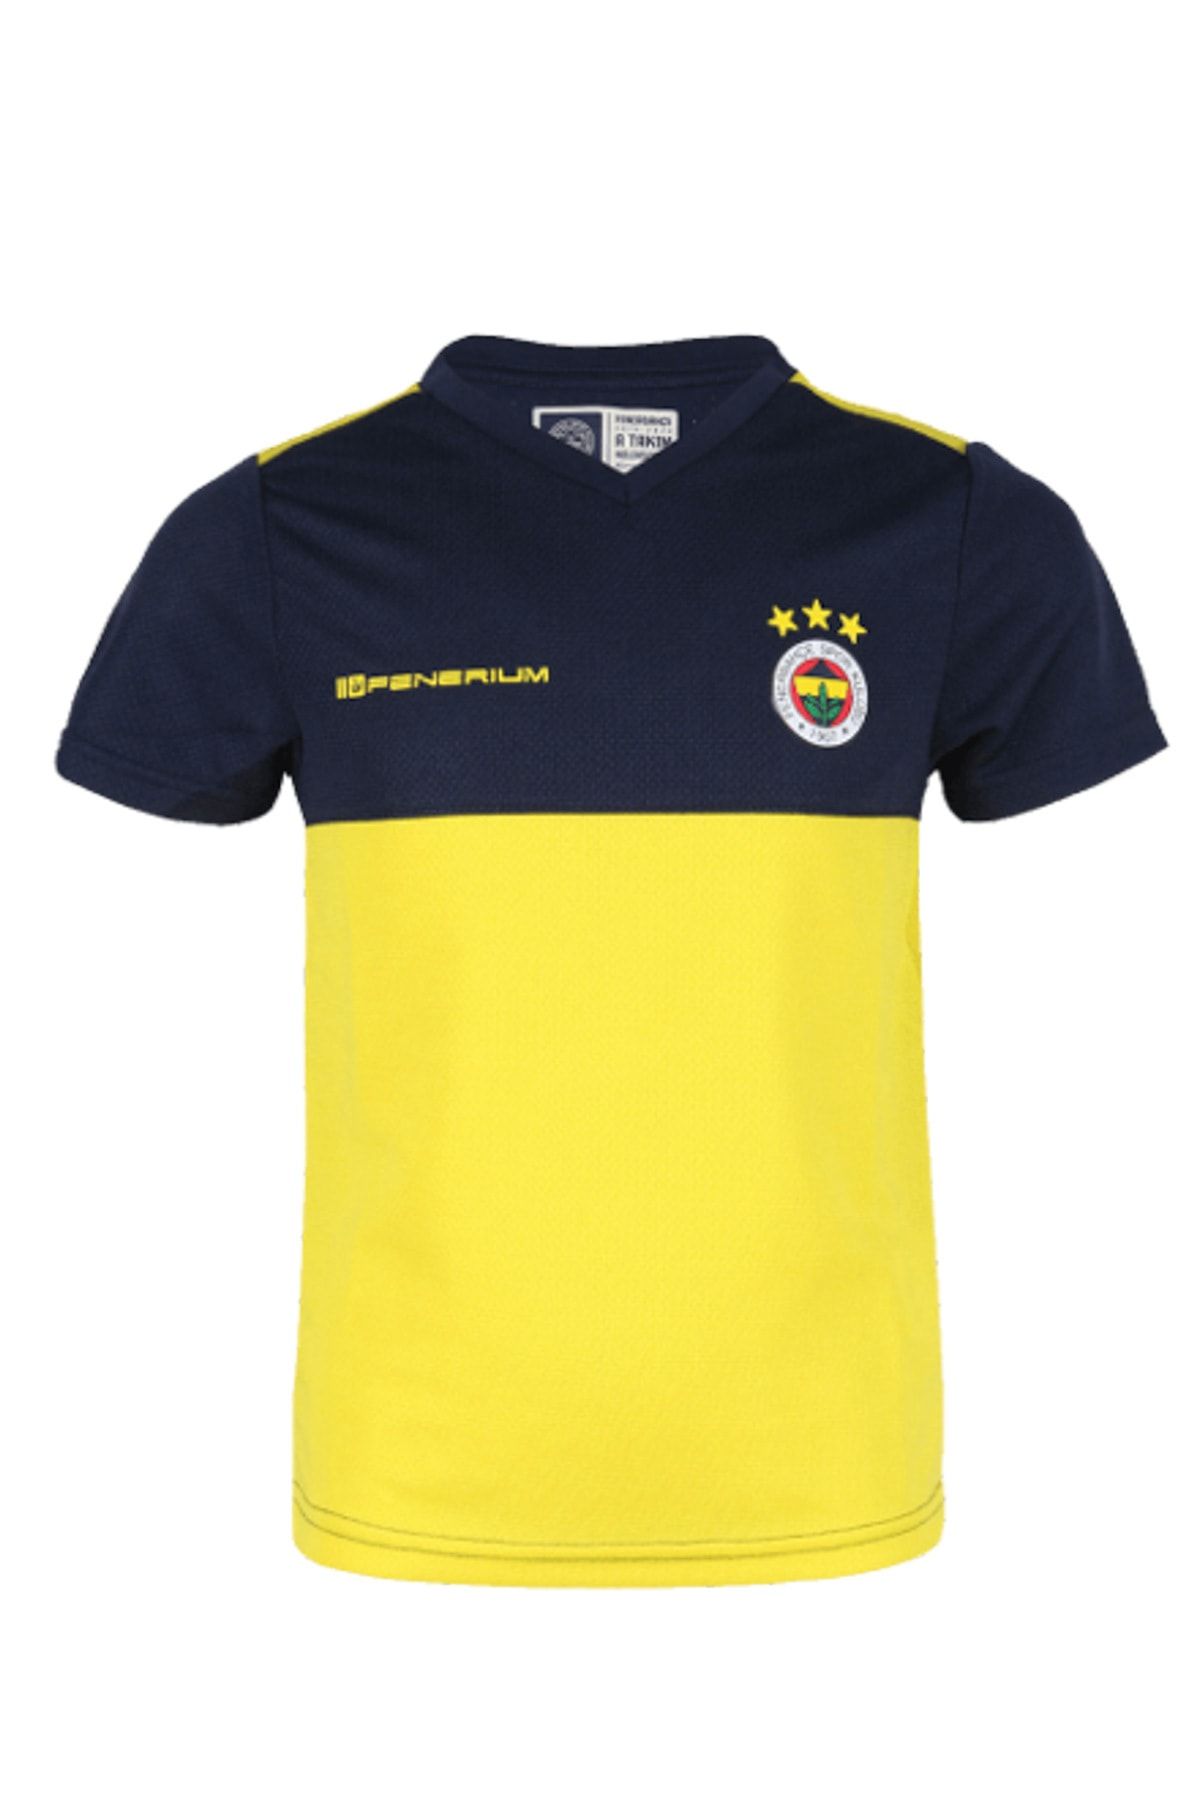 Fenerbahçe 2019/20 A TAKIM FUTBOLCU ANTRENMAN T-